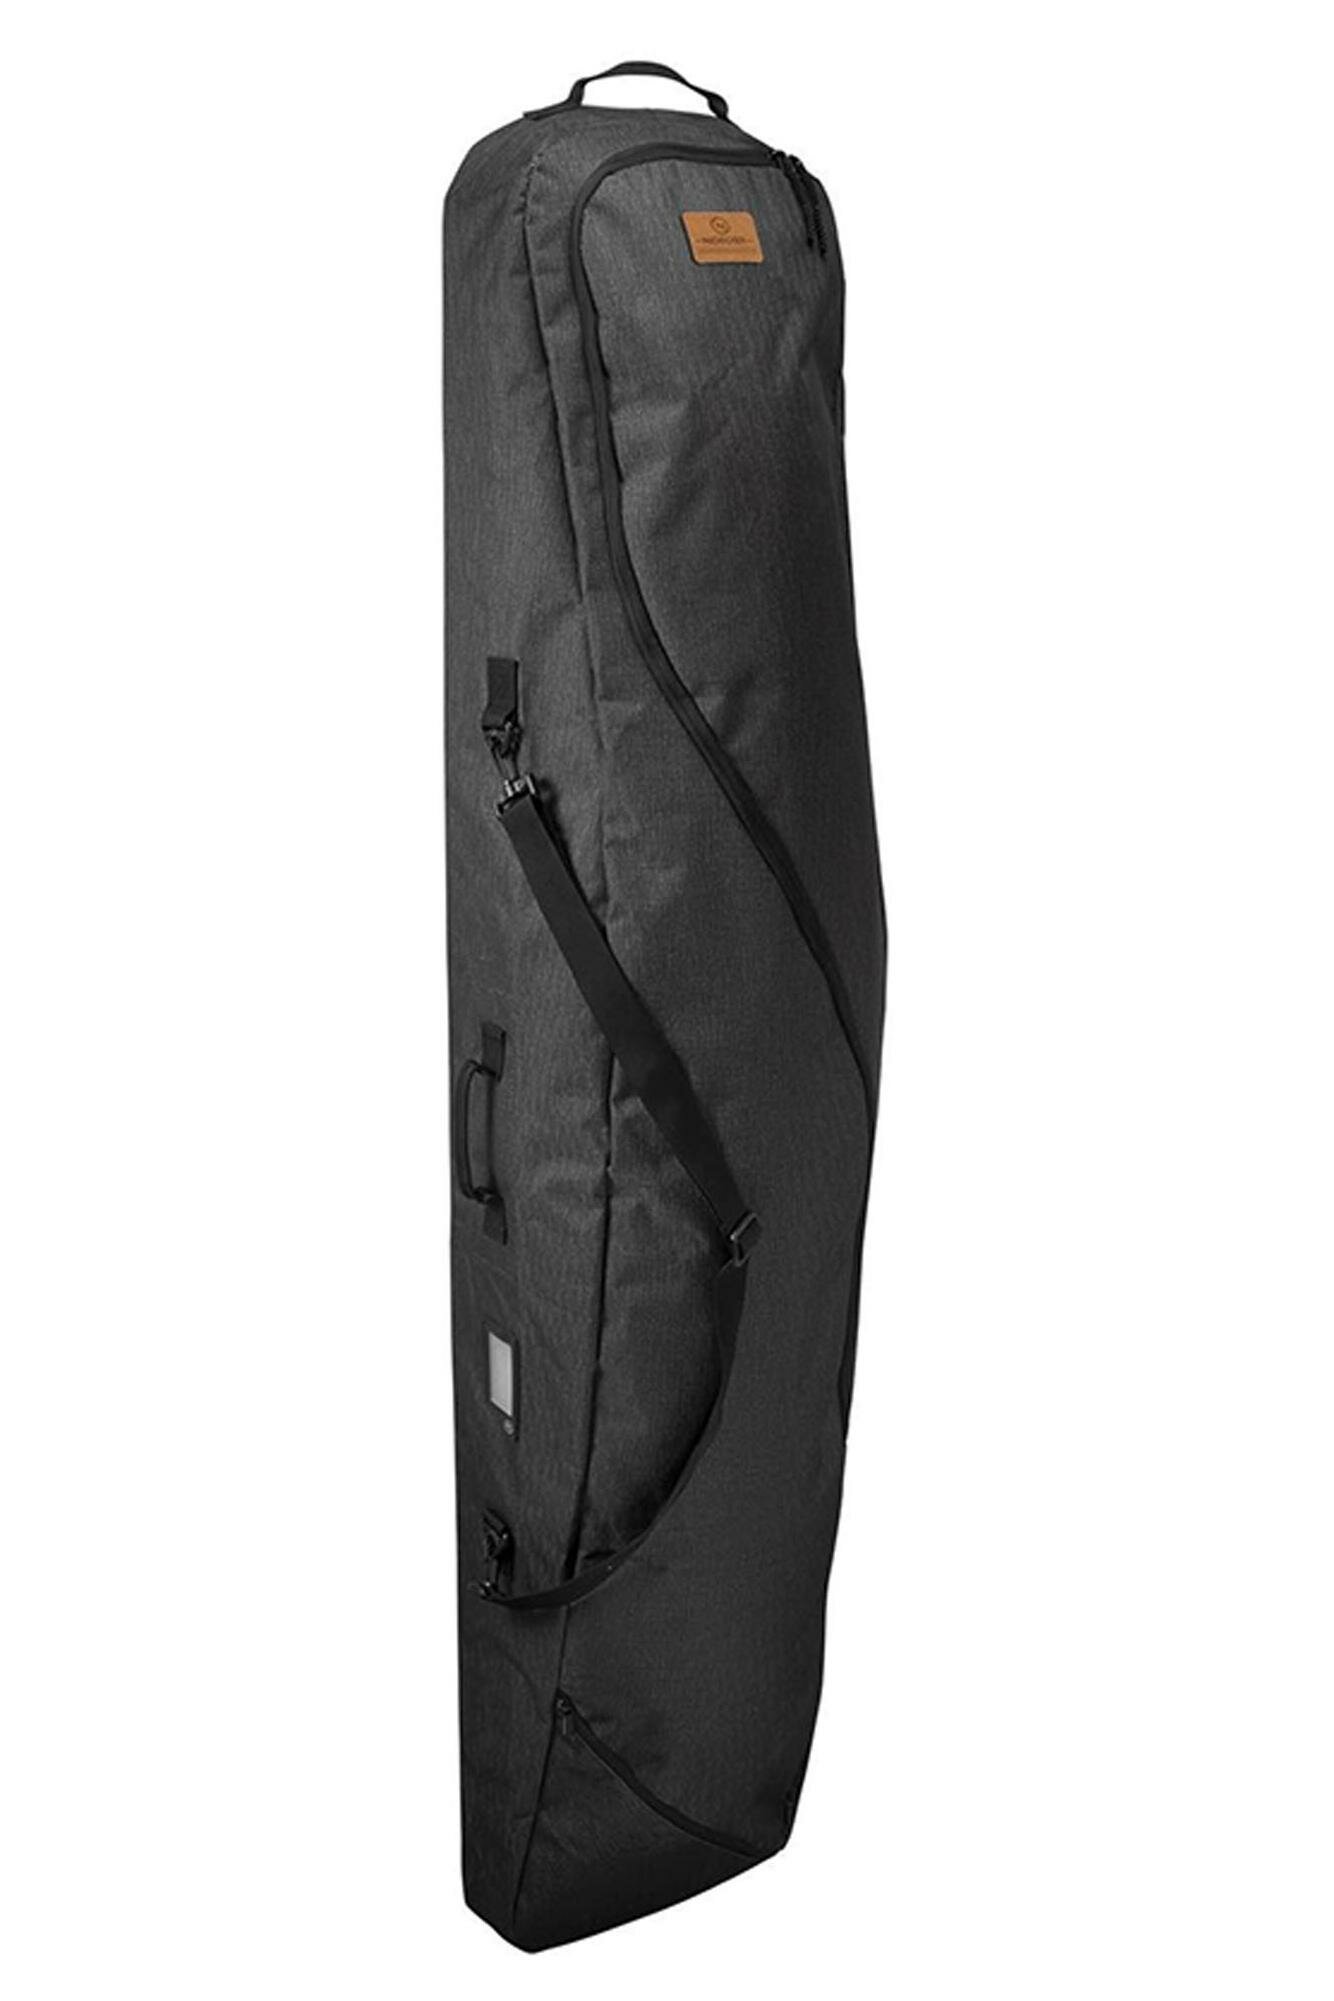 Чехол для сноуборда NIDECKER Board Bag Weekend Warrior Black (см:166)